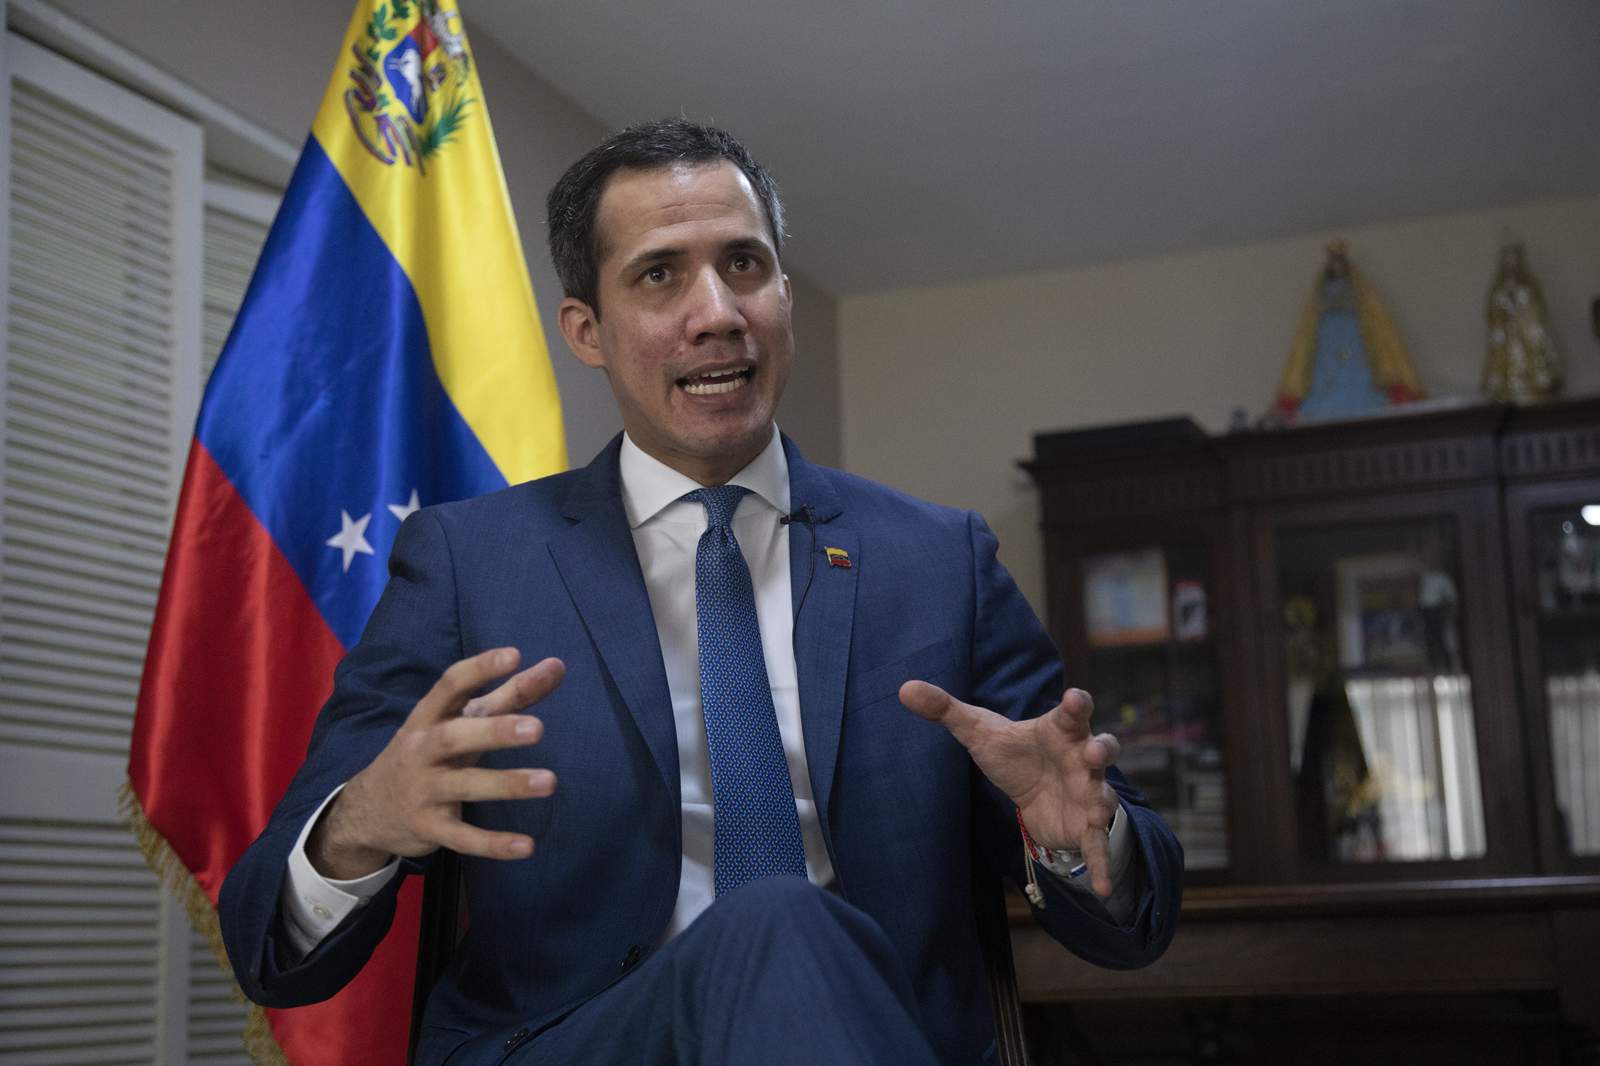 Venezuela's Guaidó: Time to revise international sanctions